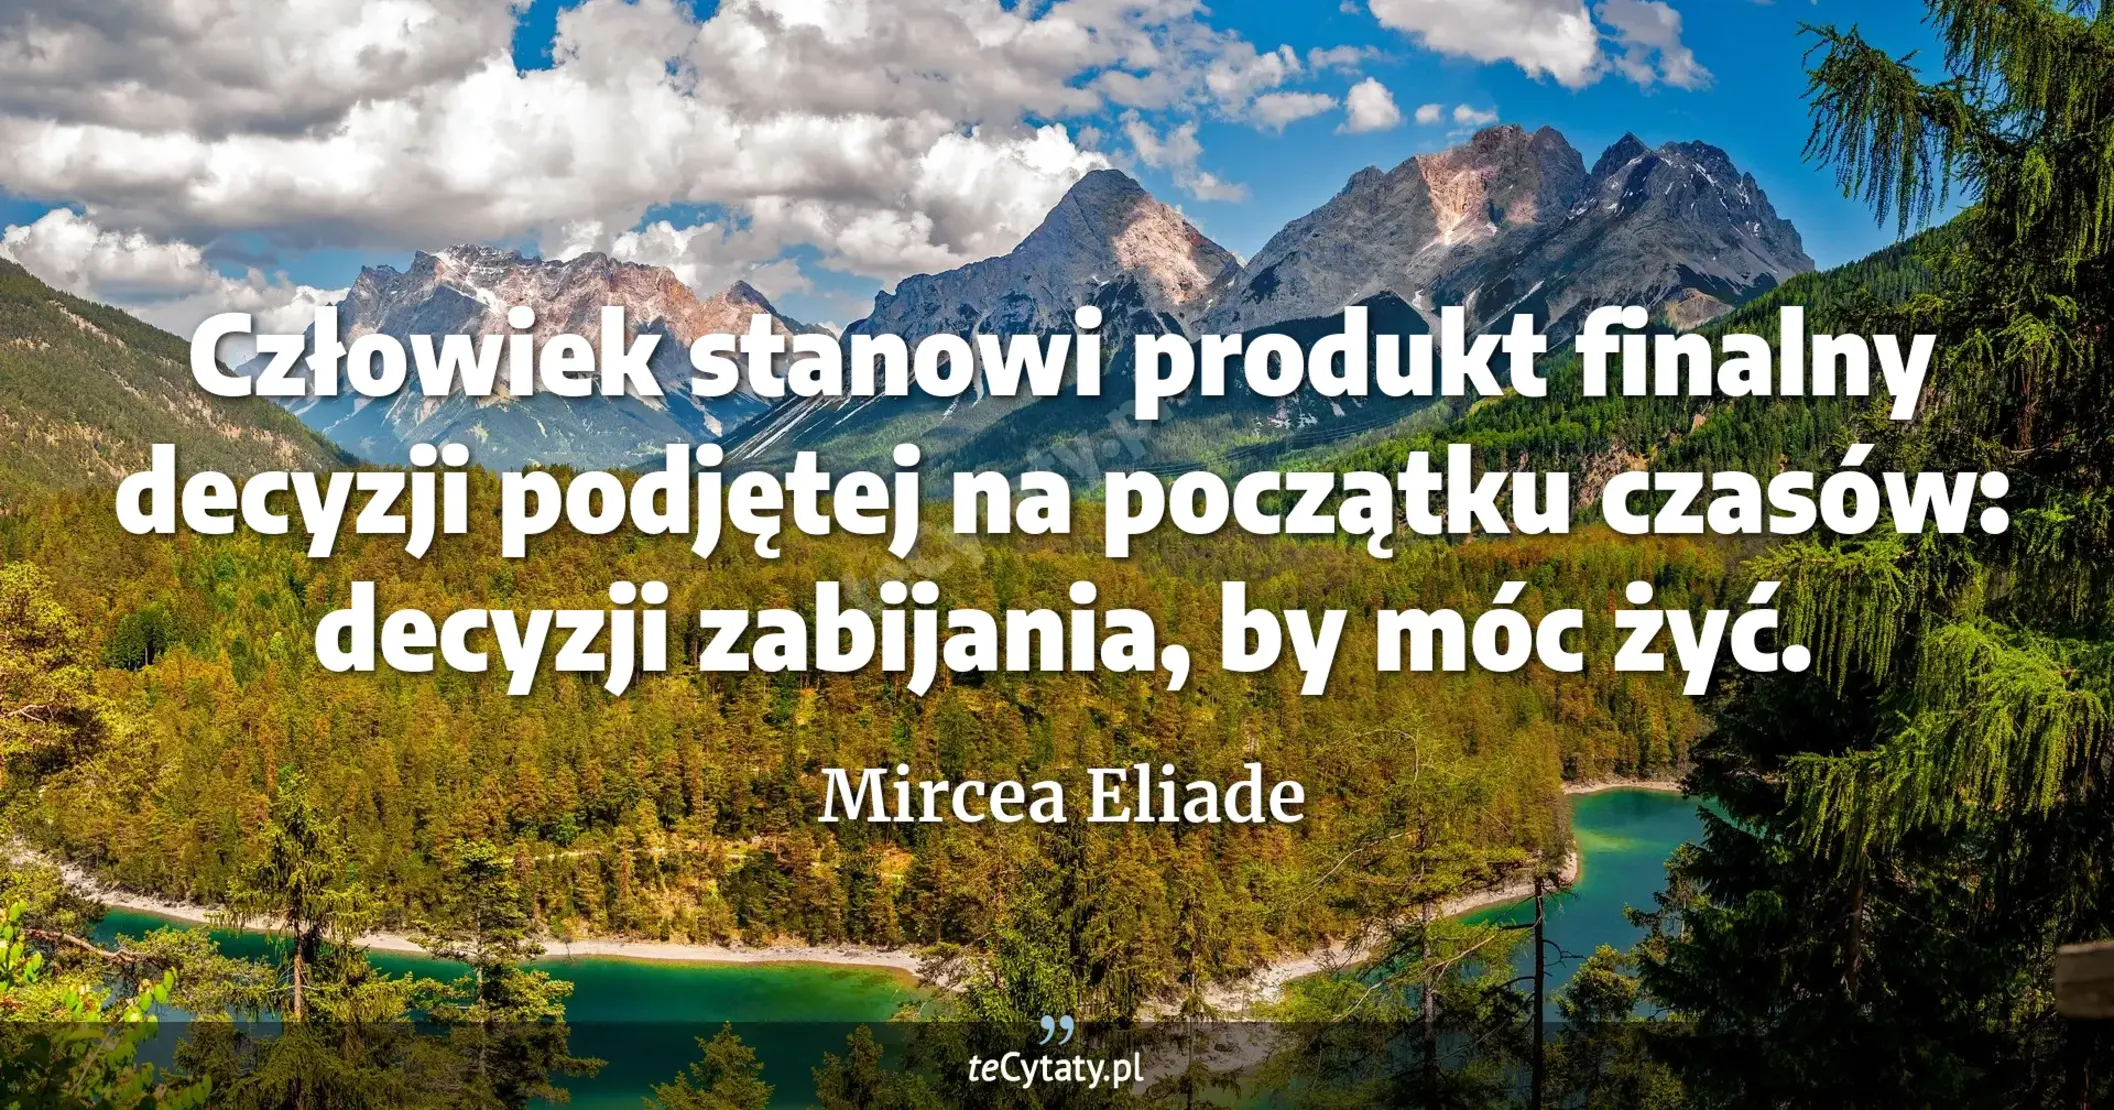 Człowiek stanowi produkt finalny decyzji podjętej na początku czasów: decyzji zabijania, by móc żyć. - Mircea Eliade